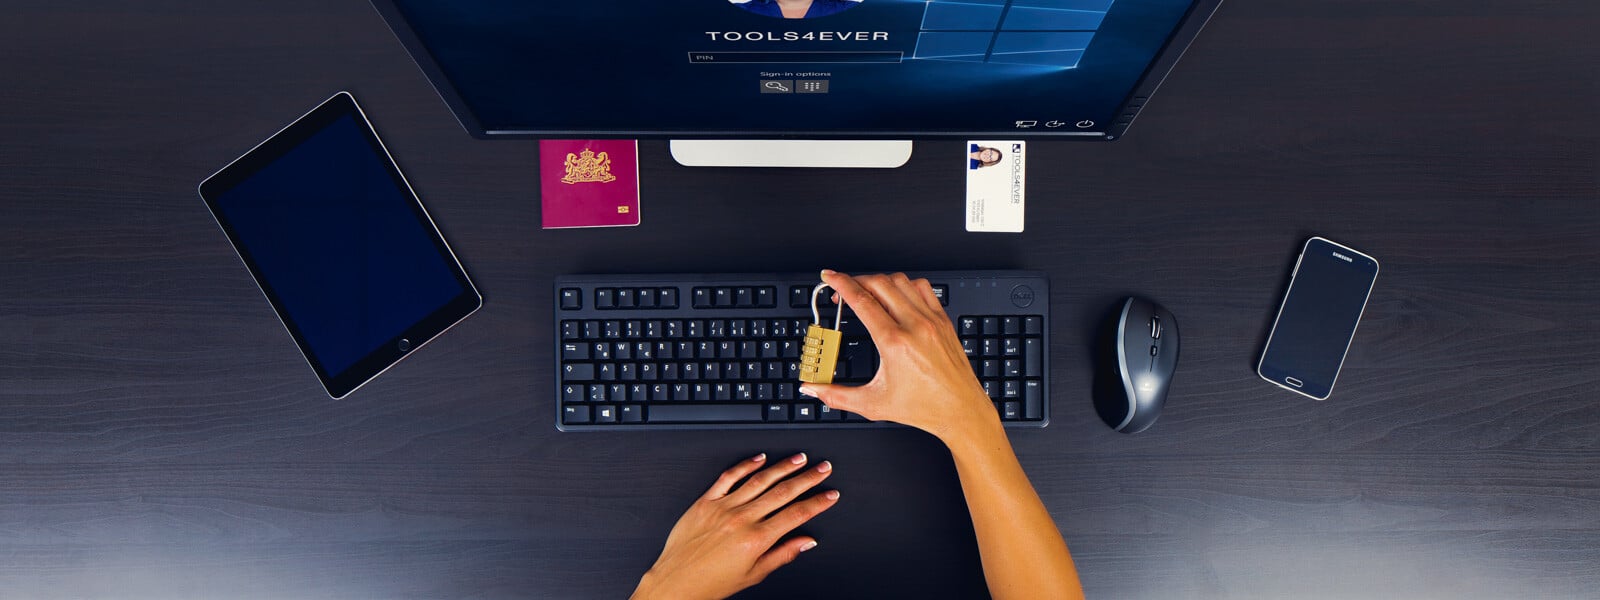 Symbolbild zur Vermeidung von Datenschutzverletzungen, darstellend ein Schloss in der Hand eines Benutzers am Schreibtisch.